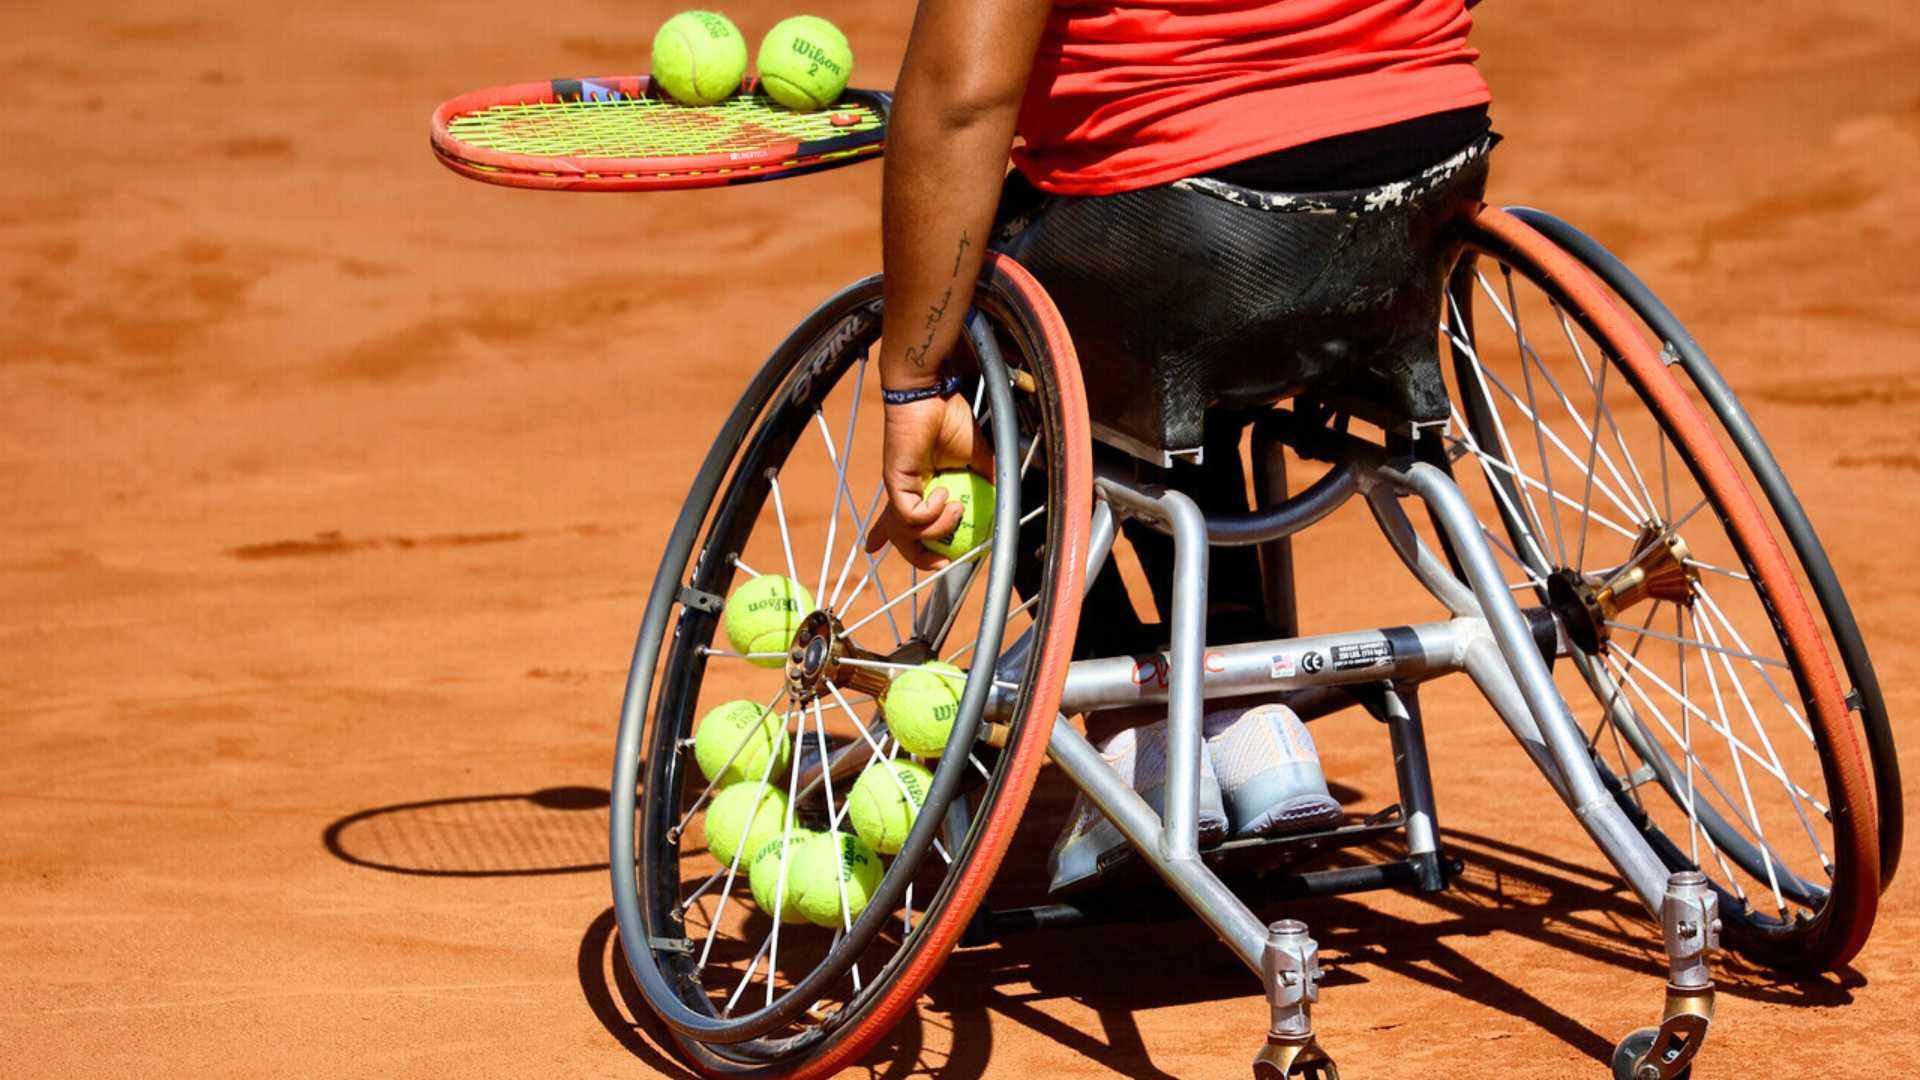 Programa domingo 19-nov: tenis en silla de ruedas volverá a encender el Court Central del Parque Estadio Nacional